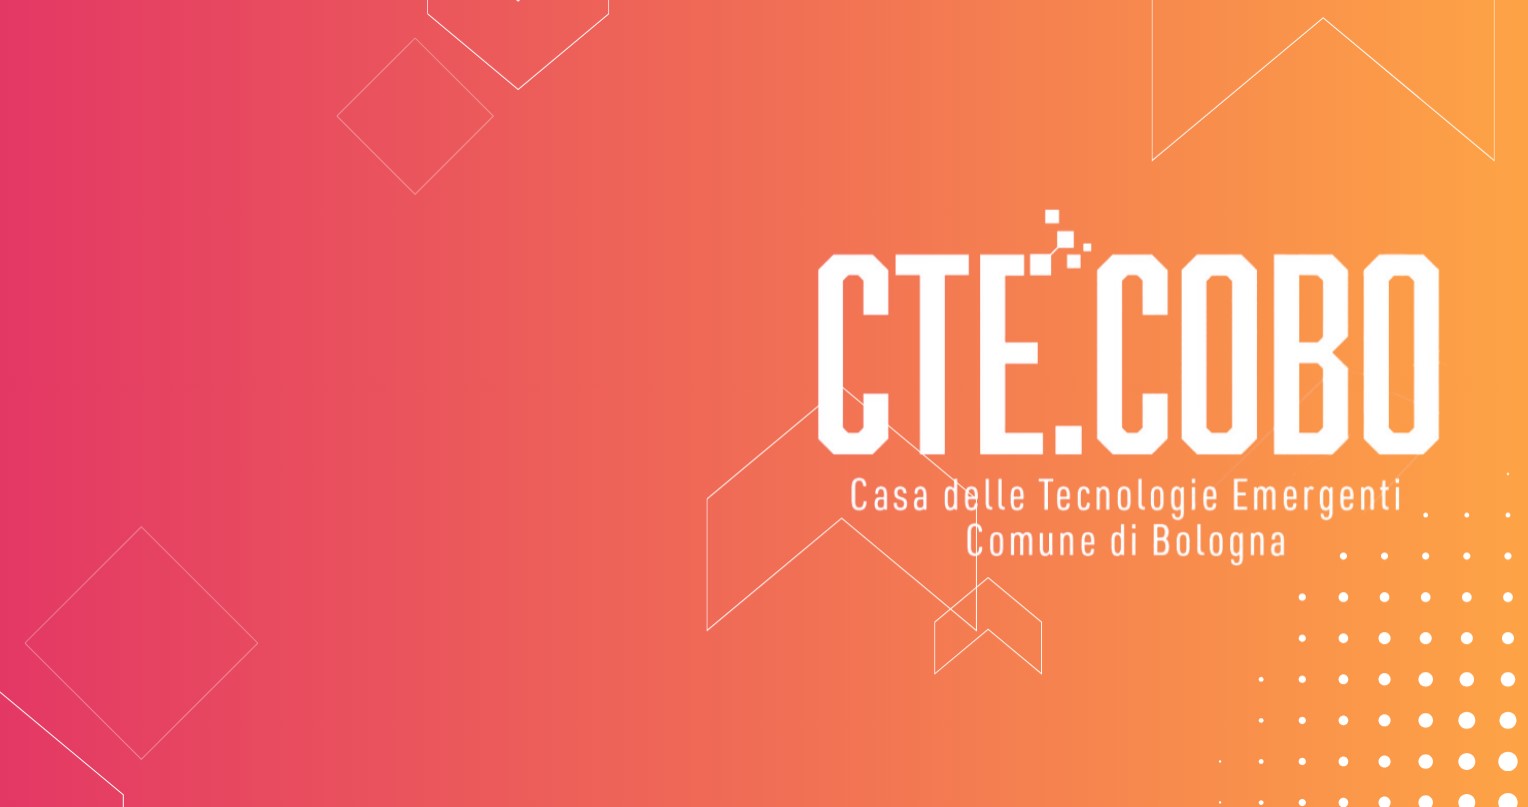 Alla Bologna Tech Week, CTE COBO presenta tutte le opportunità offerte dagli acceleratori